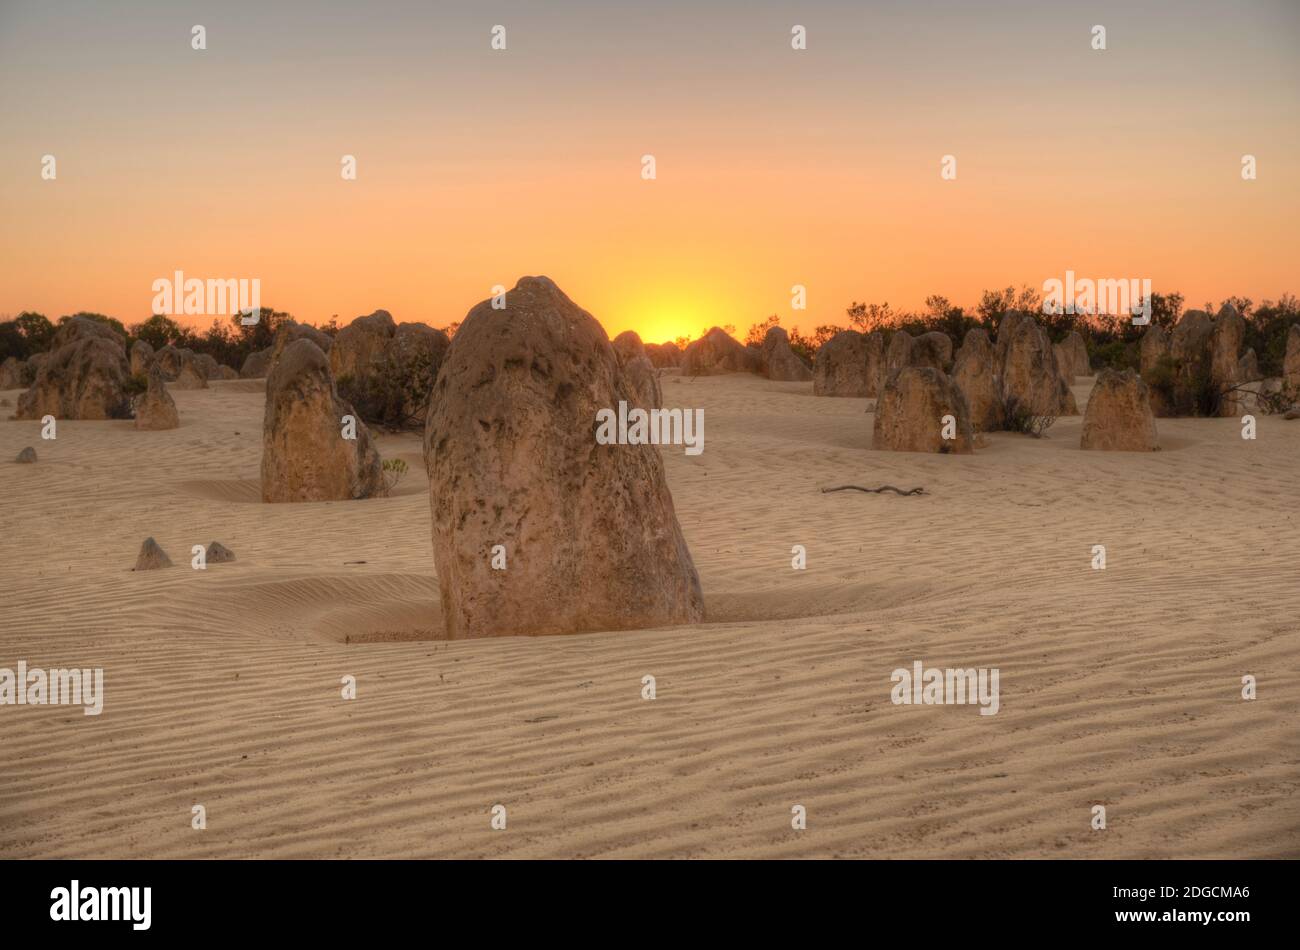 Sunset over the Pinnacles desert in Australia Stock Photo